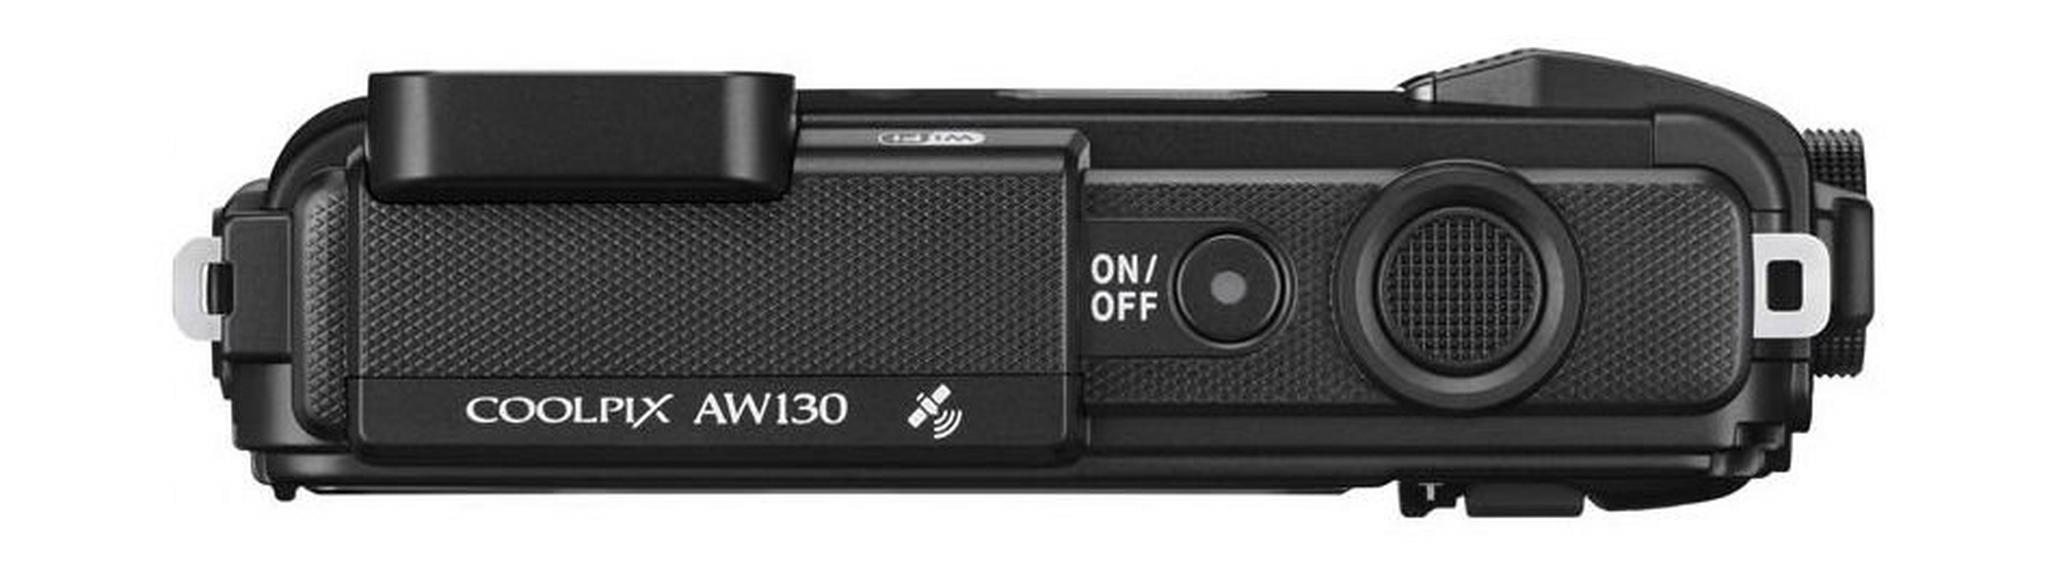 كاميرا نيكون كوولبيكس إيه دبليو١٣٠ الرقمية - ١٦ ميجا بكسل ومضادة للماء - أسود - AW130